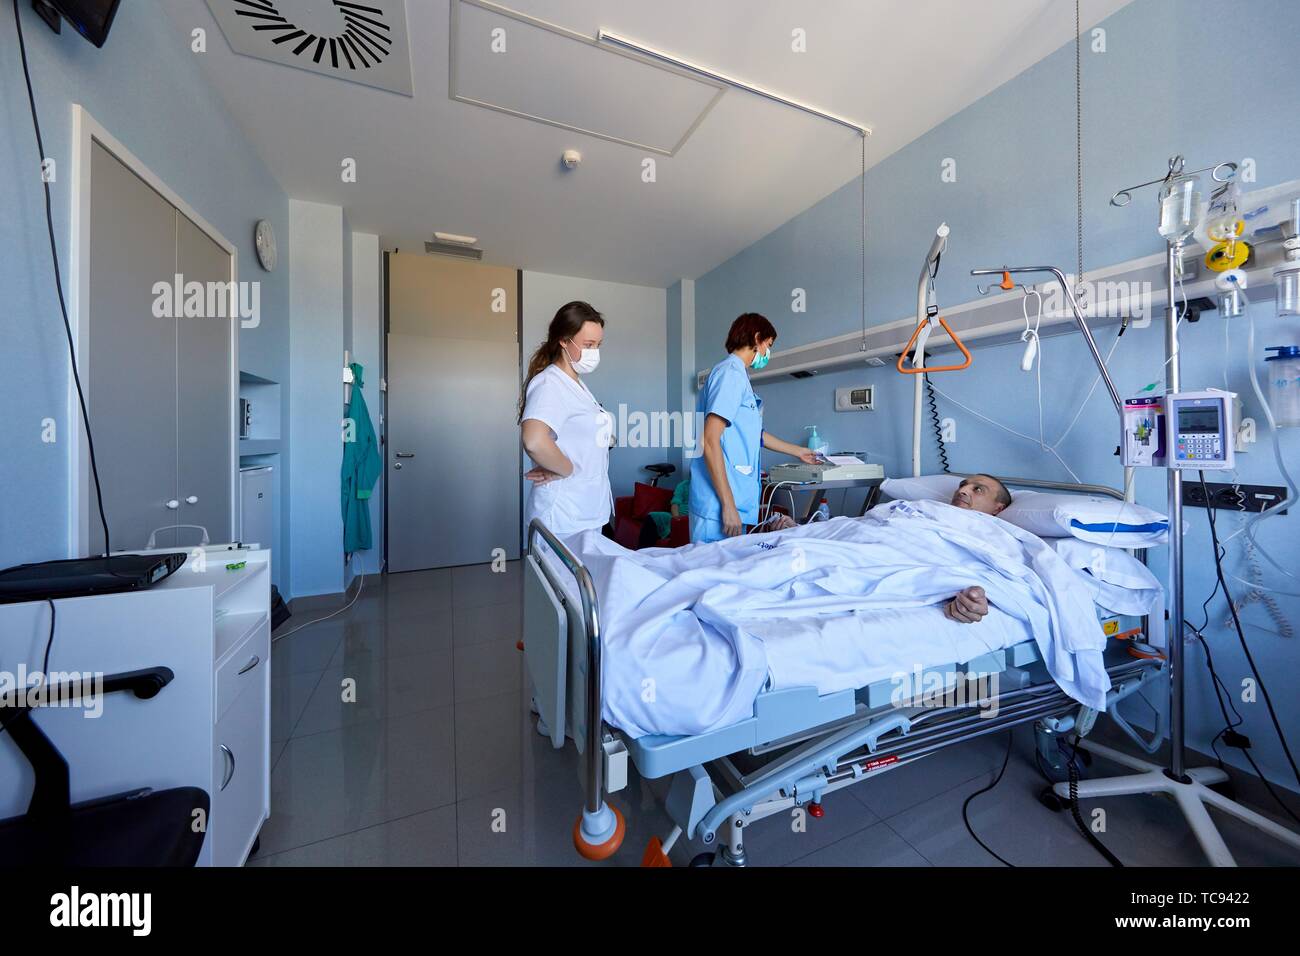 Chambre d'isolement, Patient, zone stérile, l'unité de transplantation,  Hématologie, hôpital Donostia, San Sebastian, Gipuzkoa, Pays Basque,  Espagne Photo Stock - Alamy